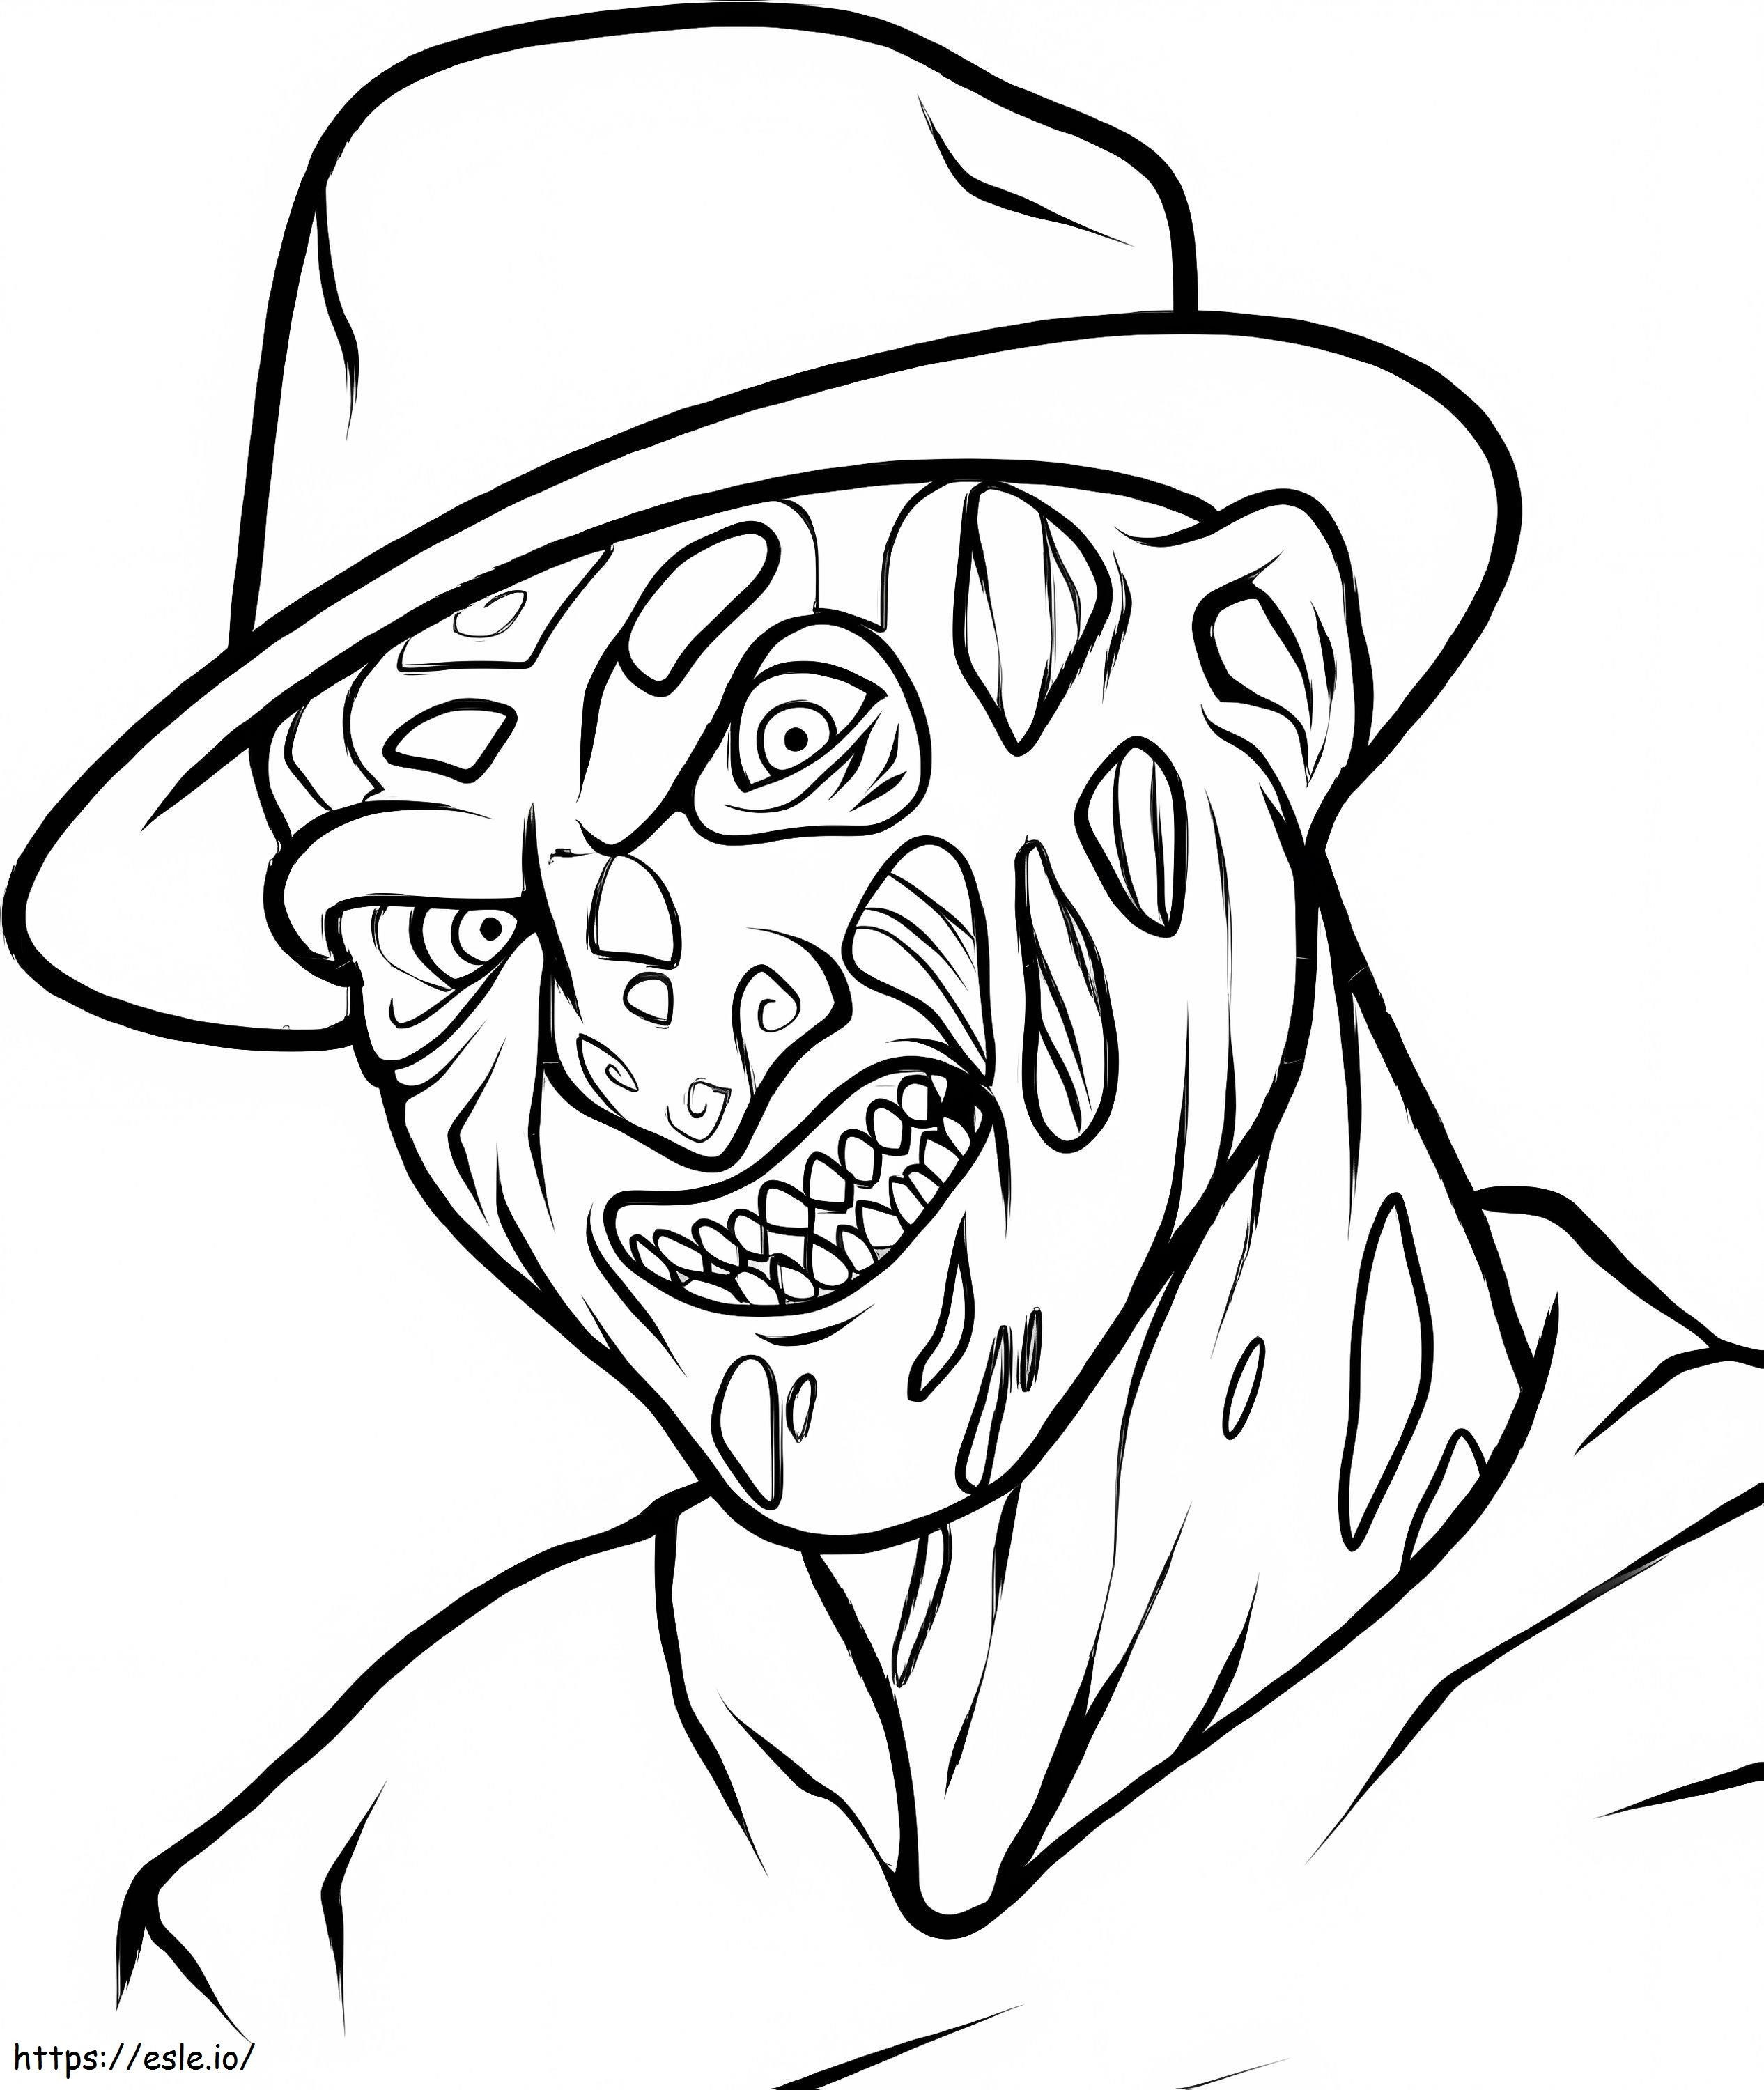 Coloriage Freddy Krueger effrayant à imprimer dessin